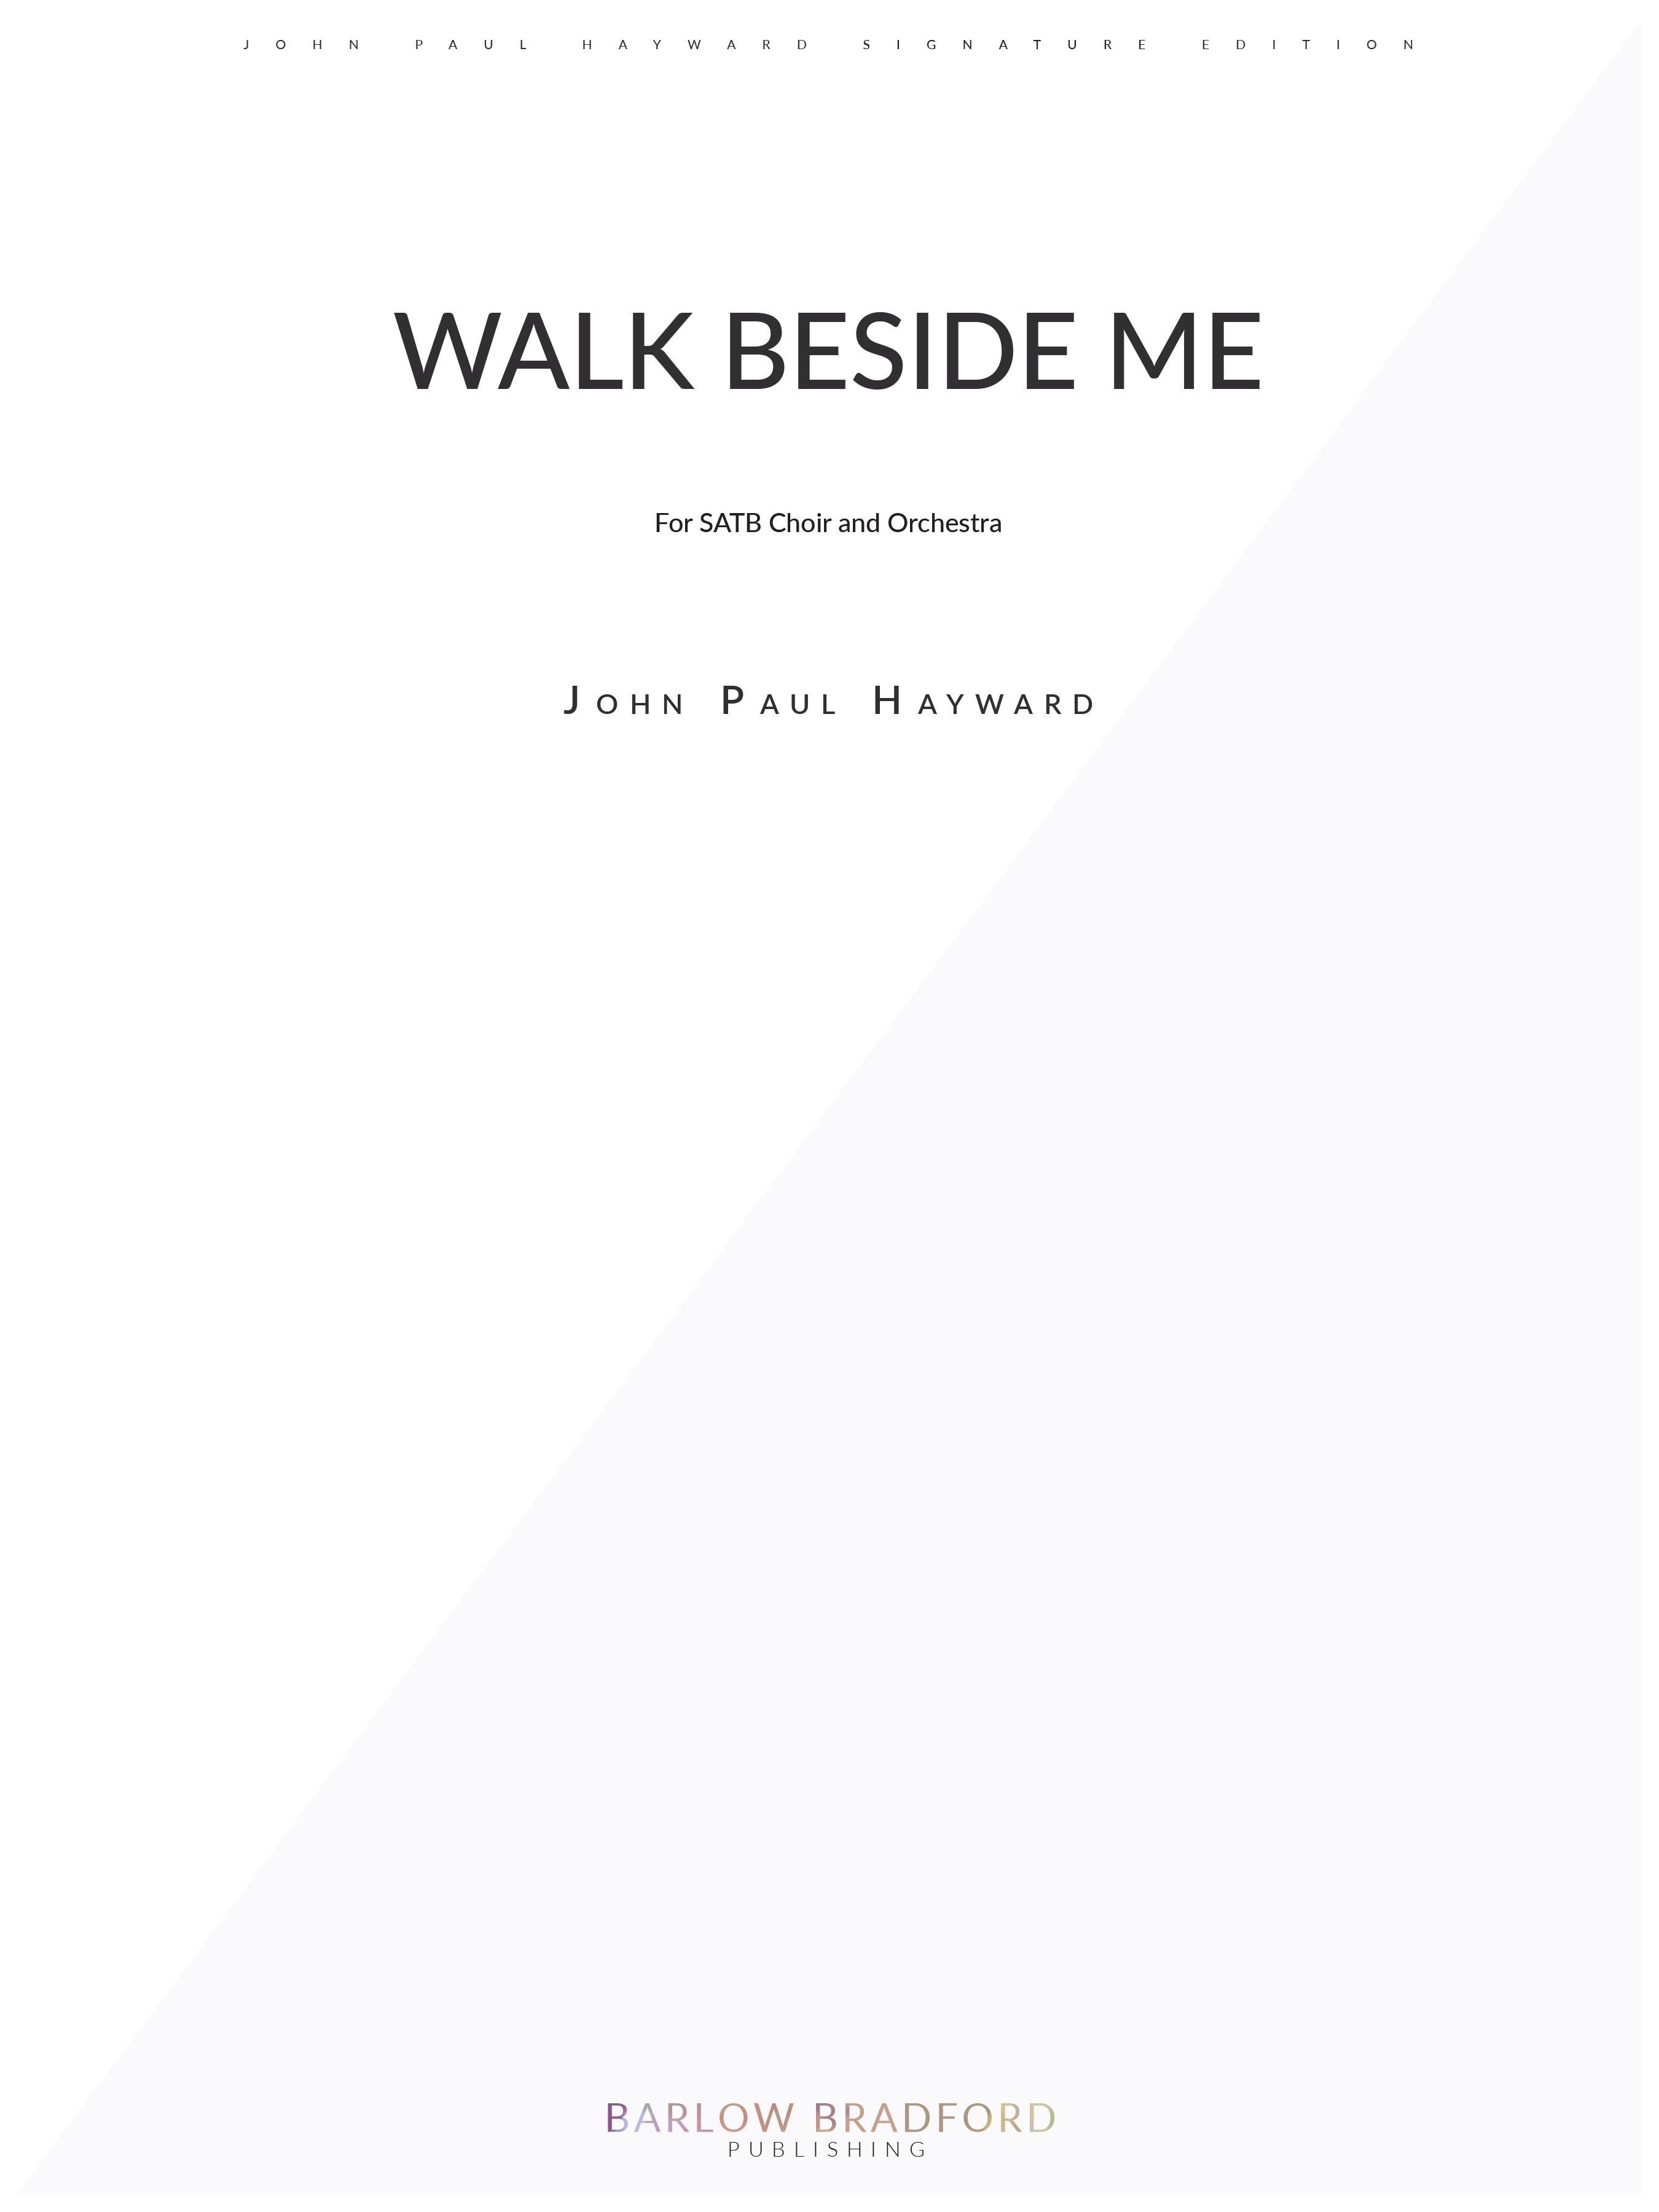 Walk Beside Me